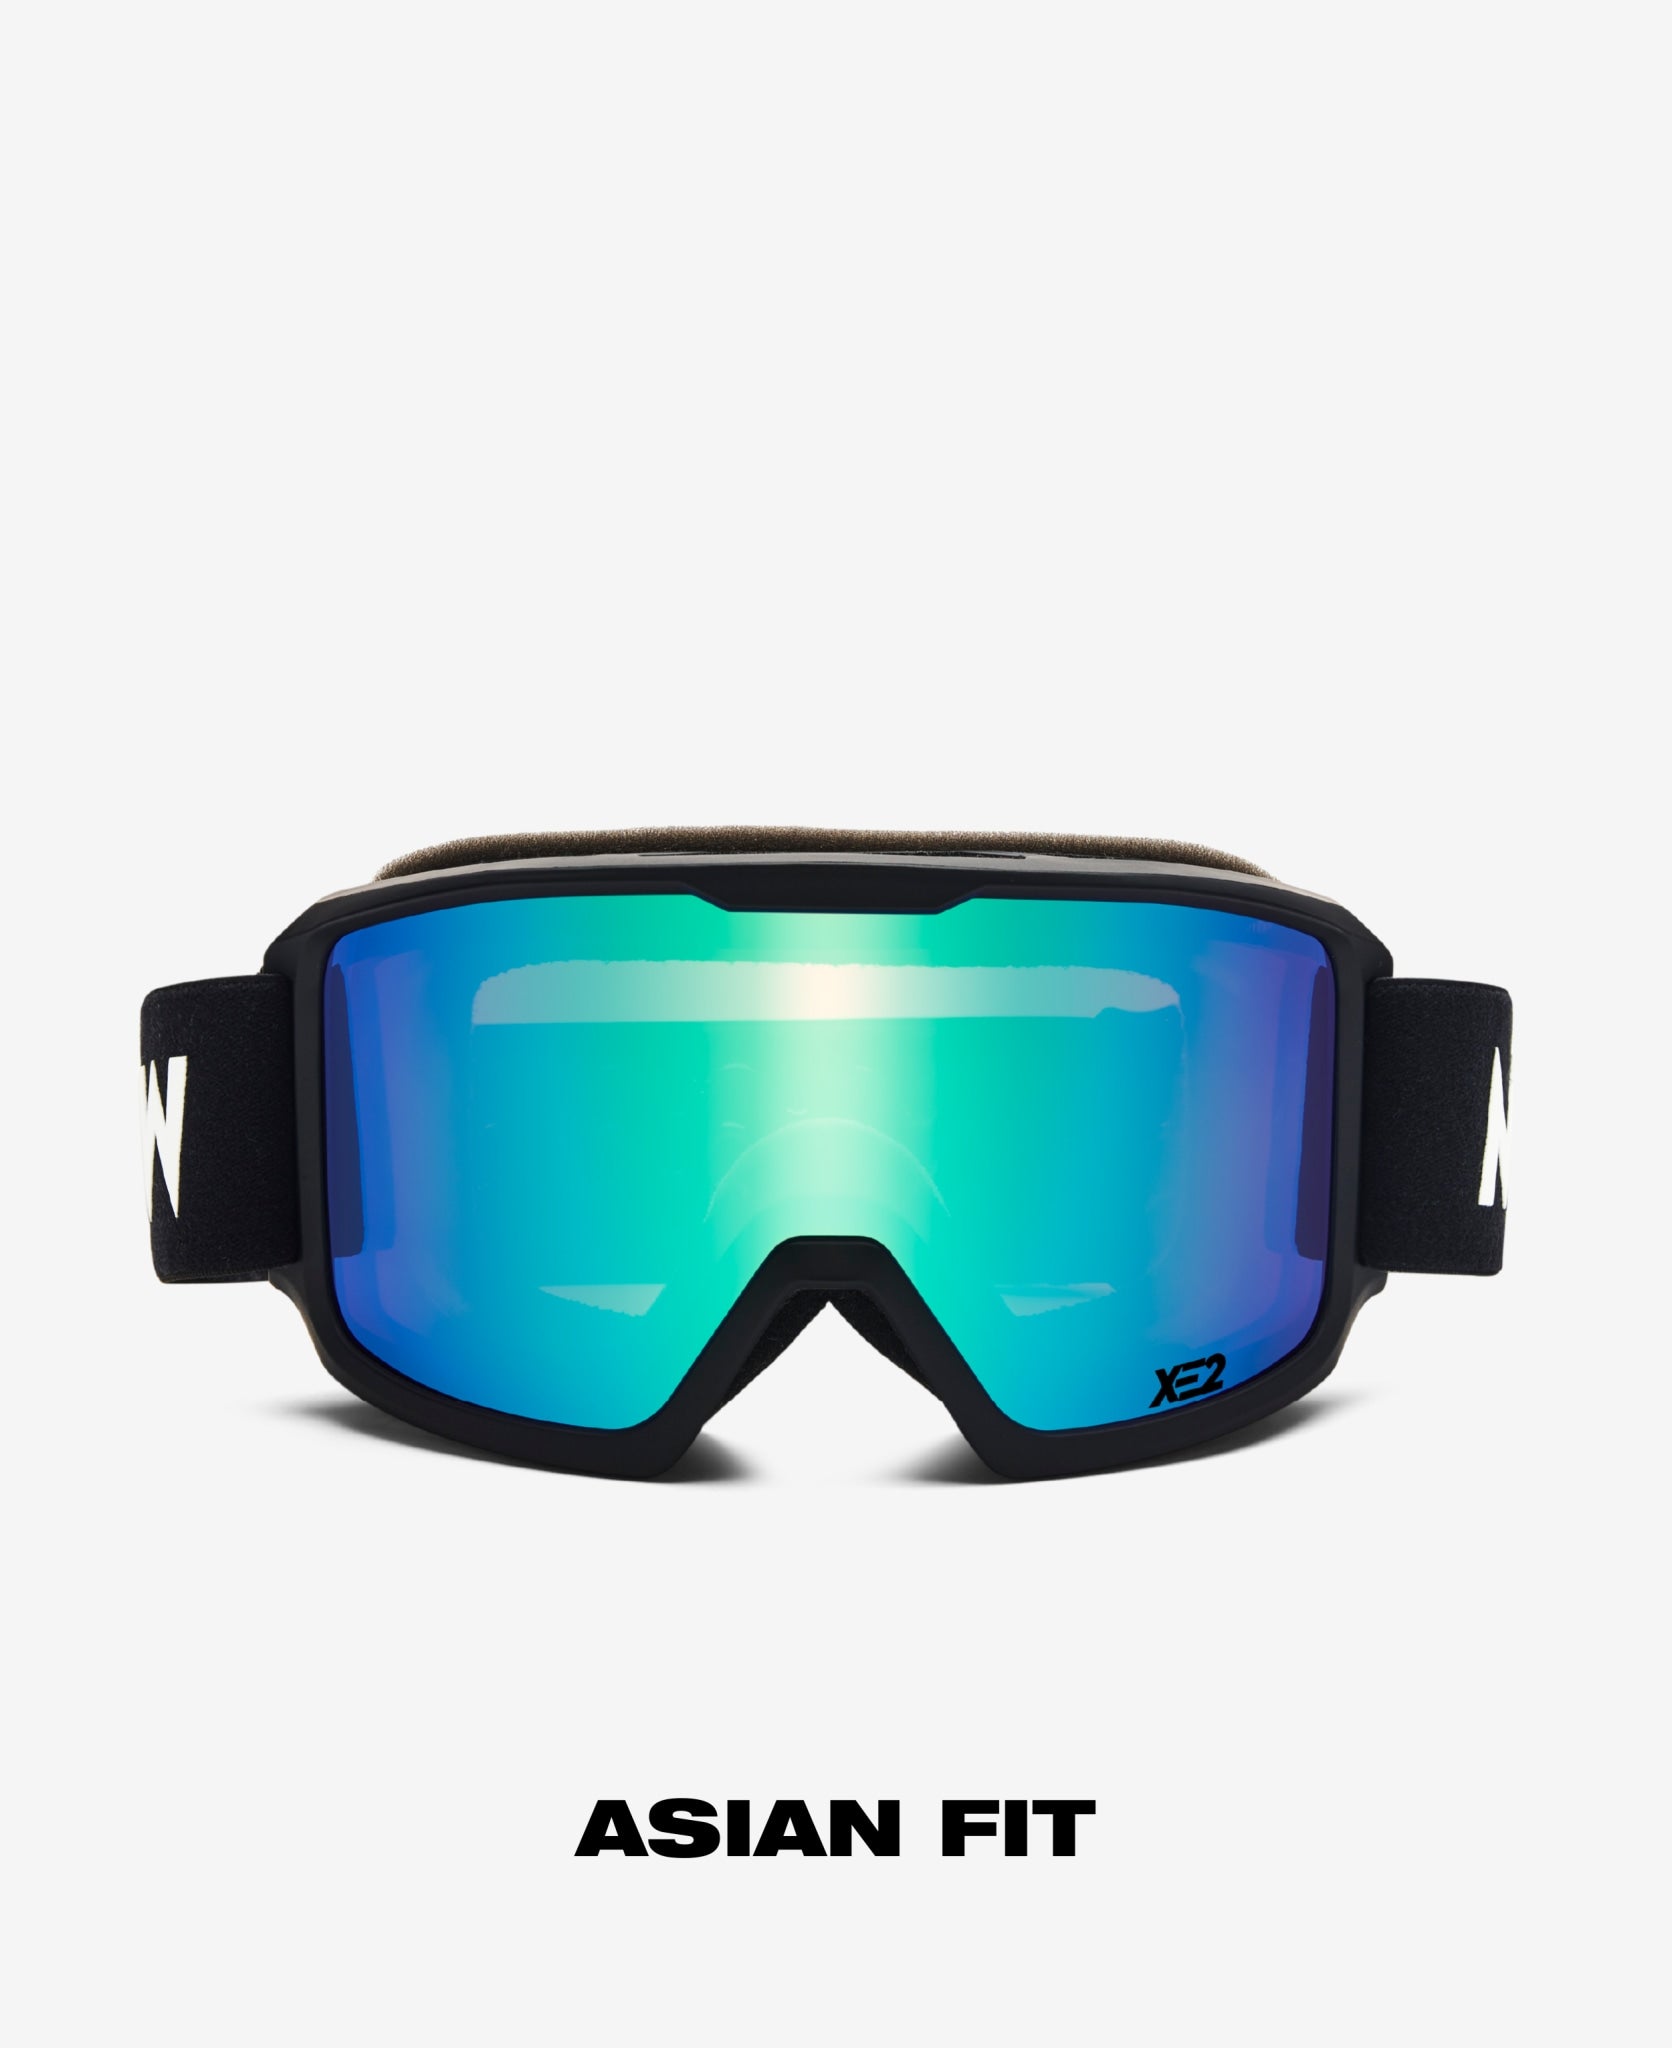 FERDI  Asian fit - Black Green Mirrored